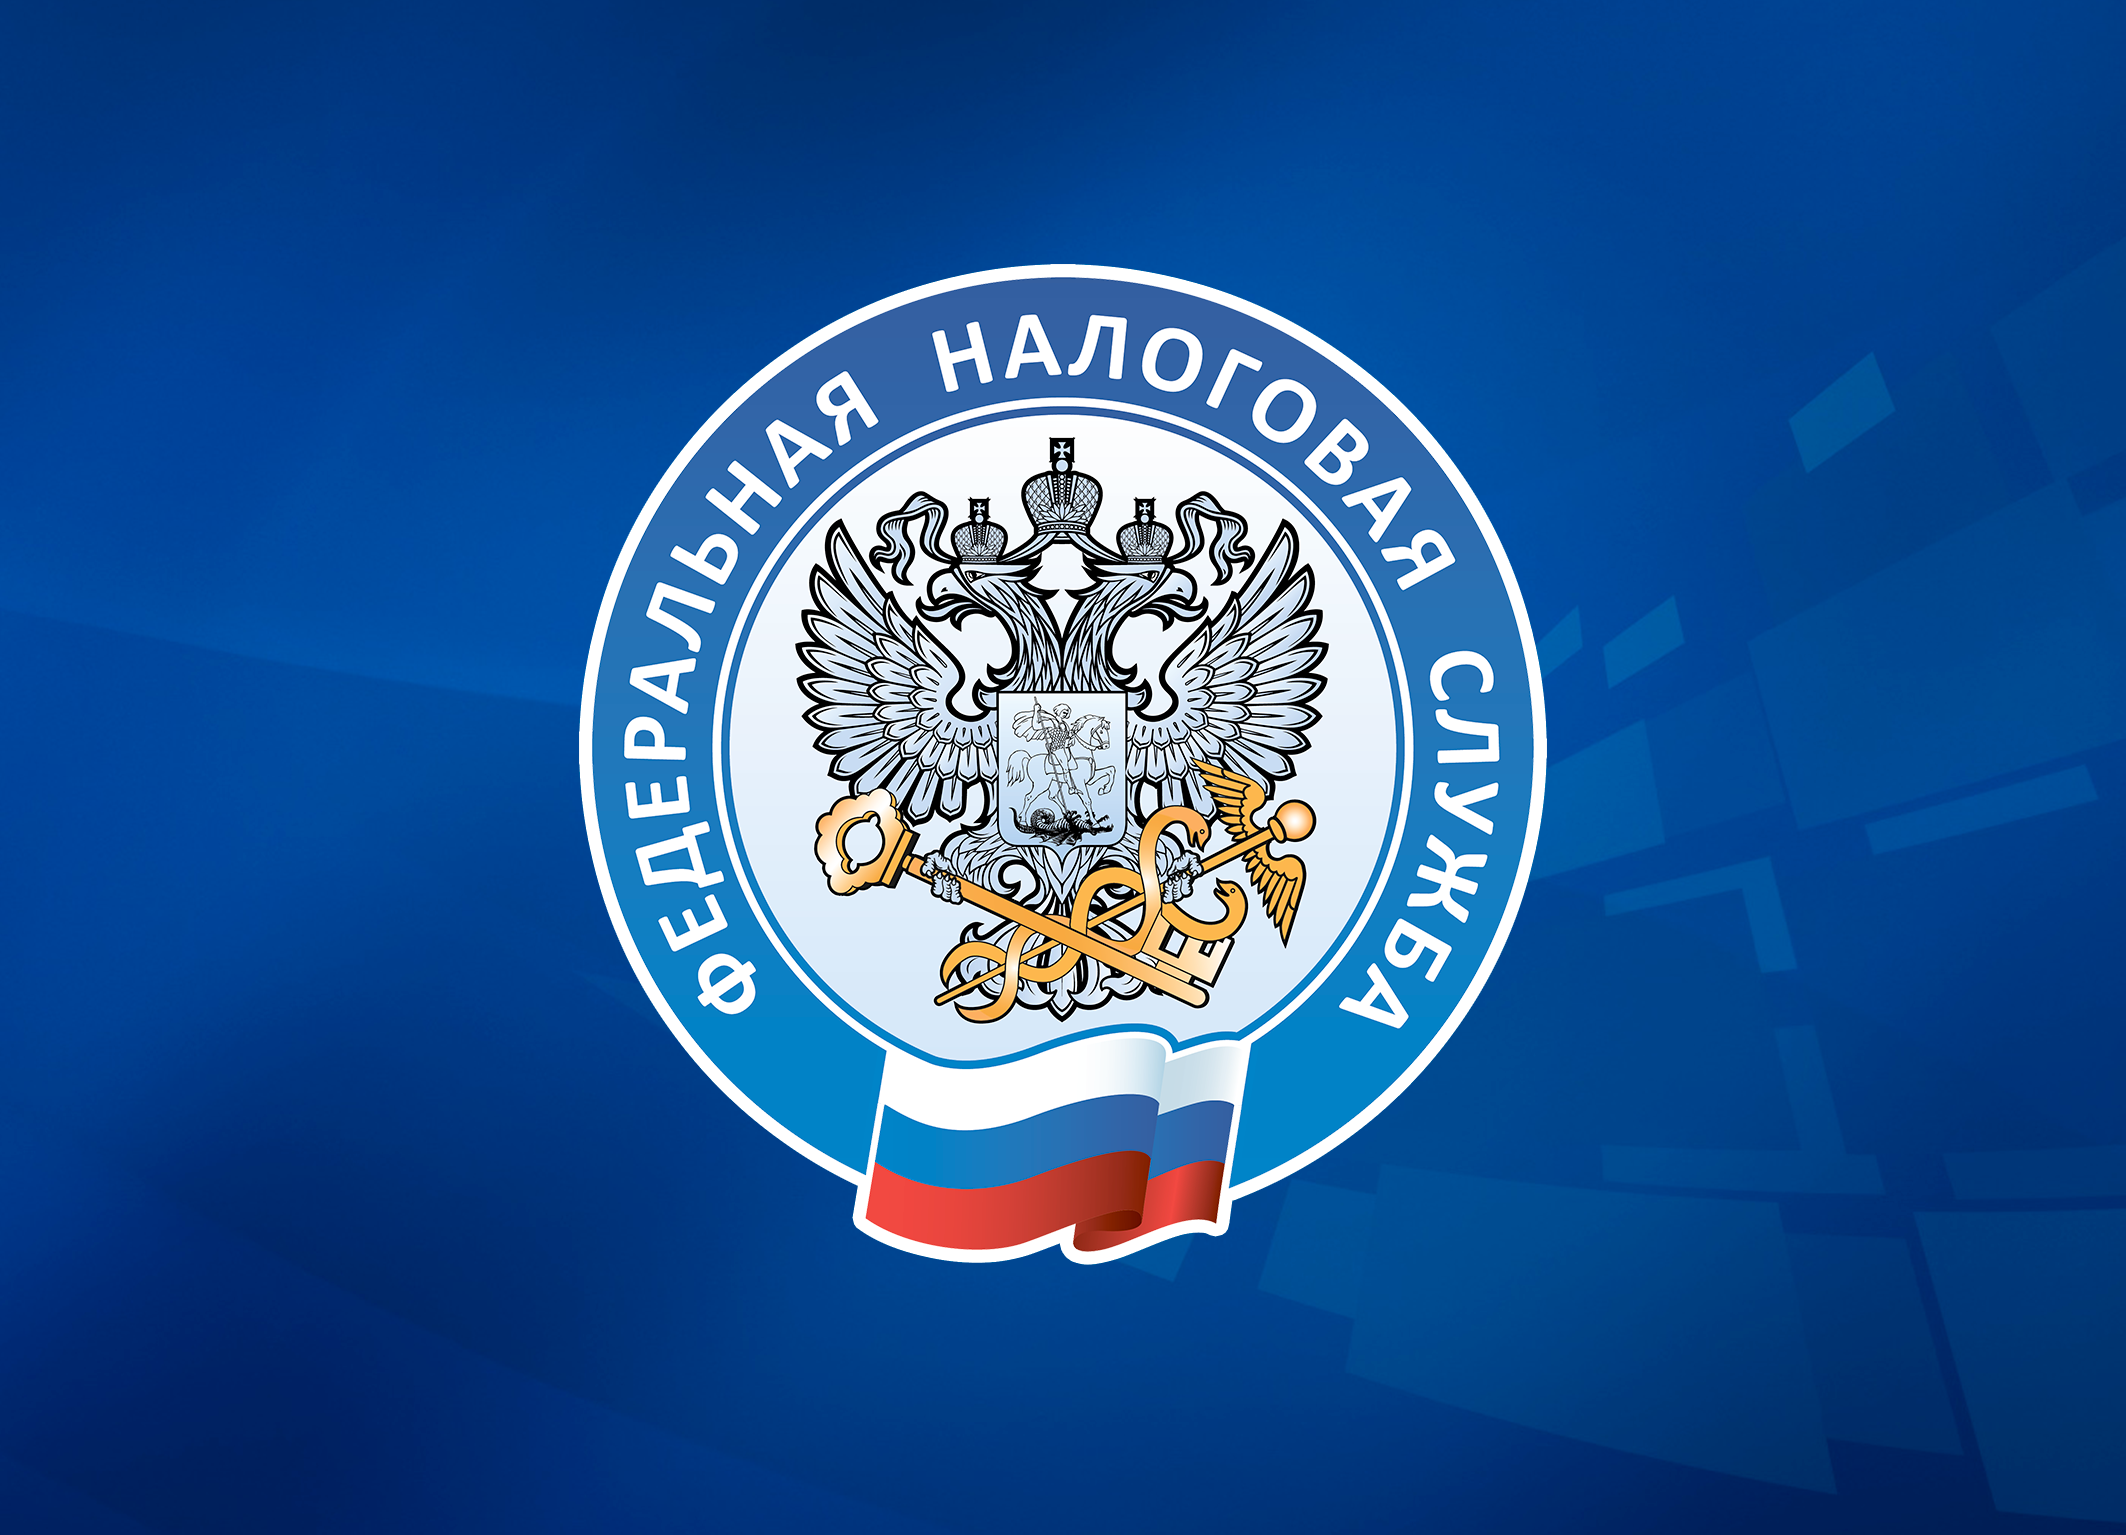 Более 440 тысяч жителей Коми общаются с налоговой через Личный кабинет ФНС России.